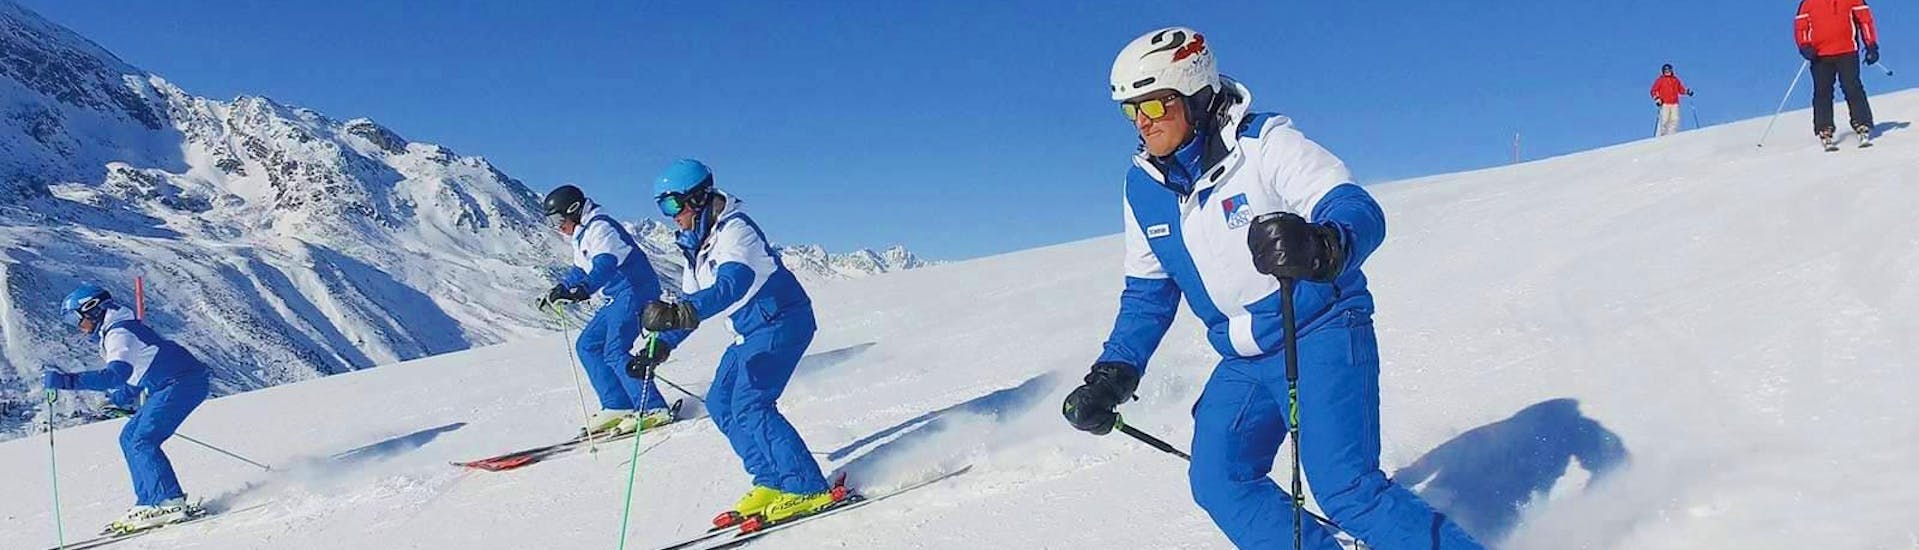 Beim Skikurs für Erwachsene für Fortgeschrittene mit der Schischule Hochgurgl zeigen die geprüften Skilehrer die richtige Skitechnik.